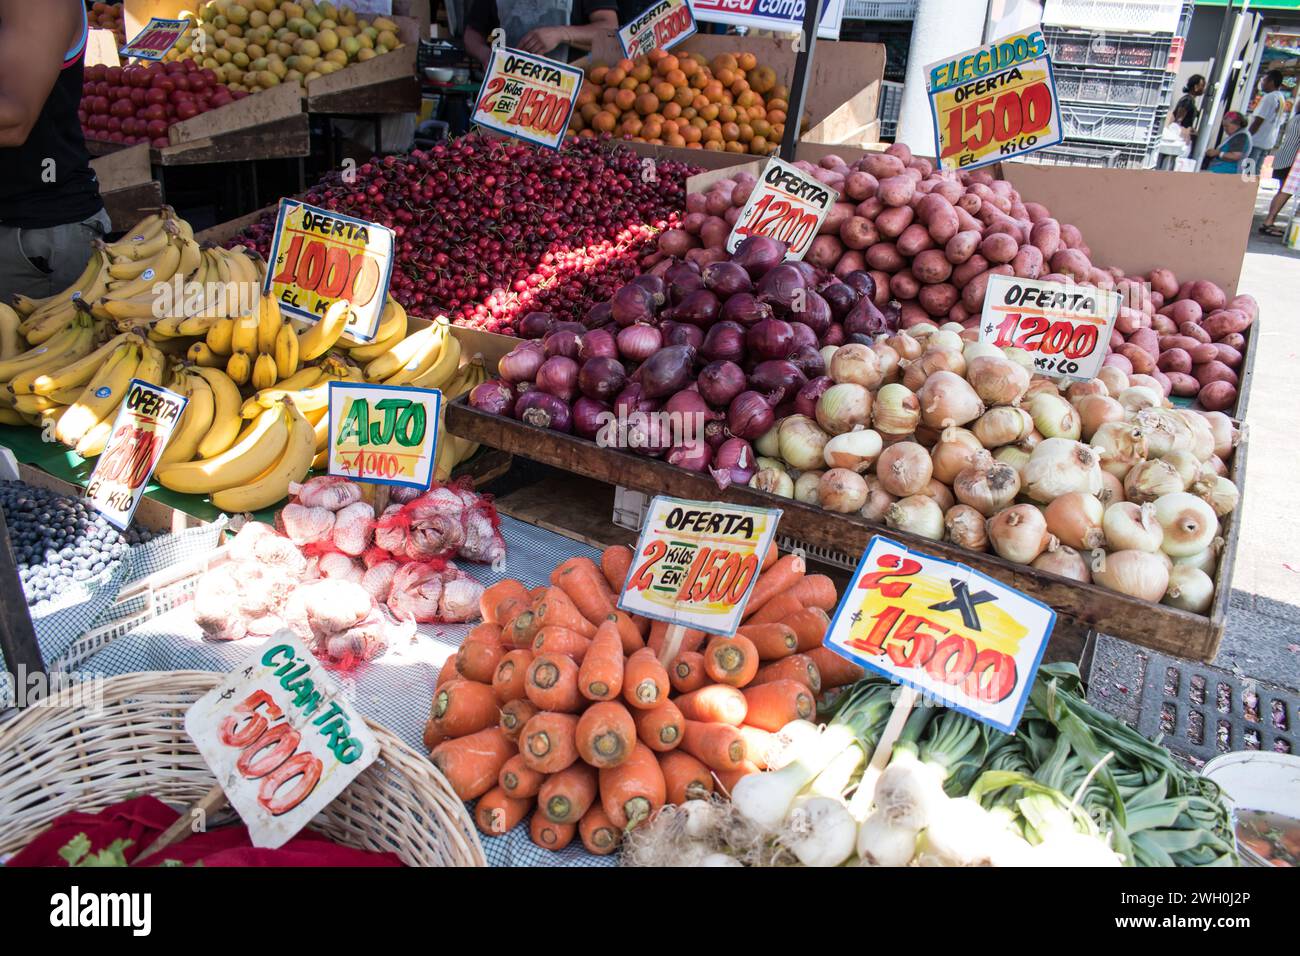 Die Marktstände rund um den Mercado Central in Chile bieten eine lebhafte Auswahl an Waren, darunter frisches Obst und Gemüse. Stockfoto